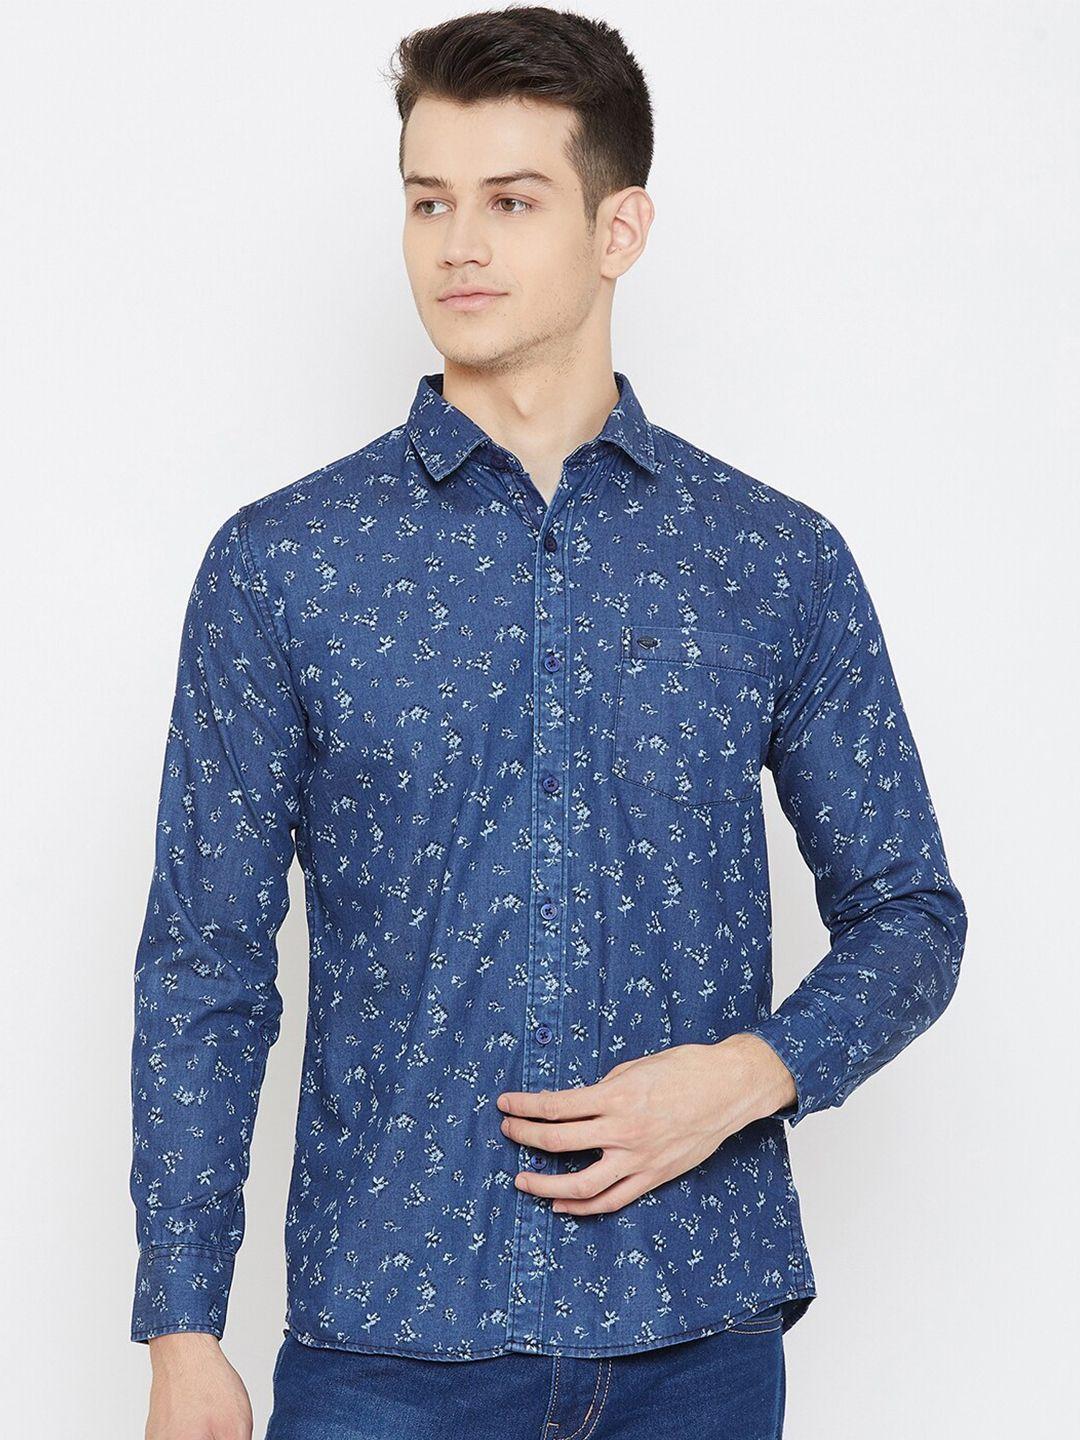 duke-men-blue-slim-fit-floral-printed-casual-shirt